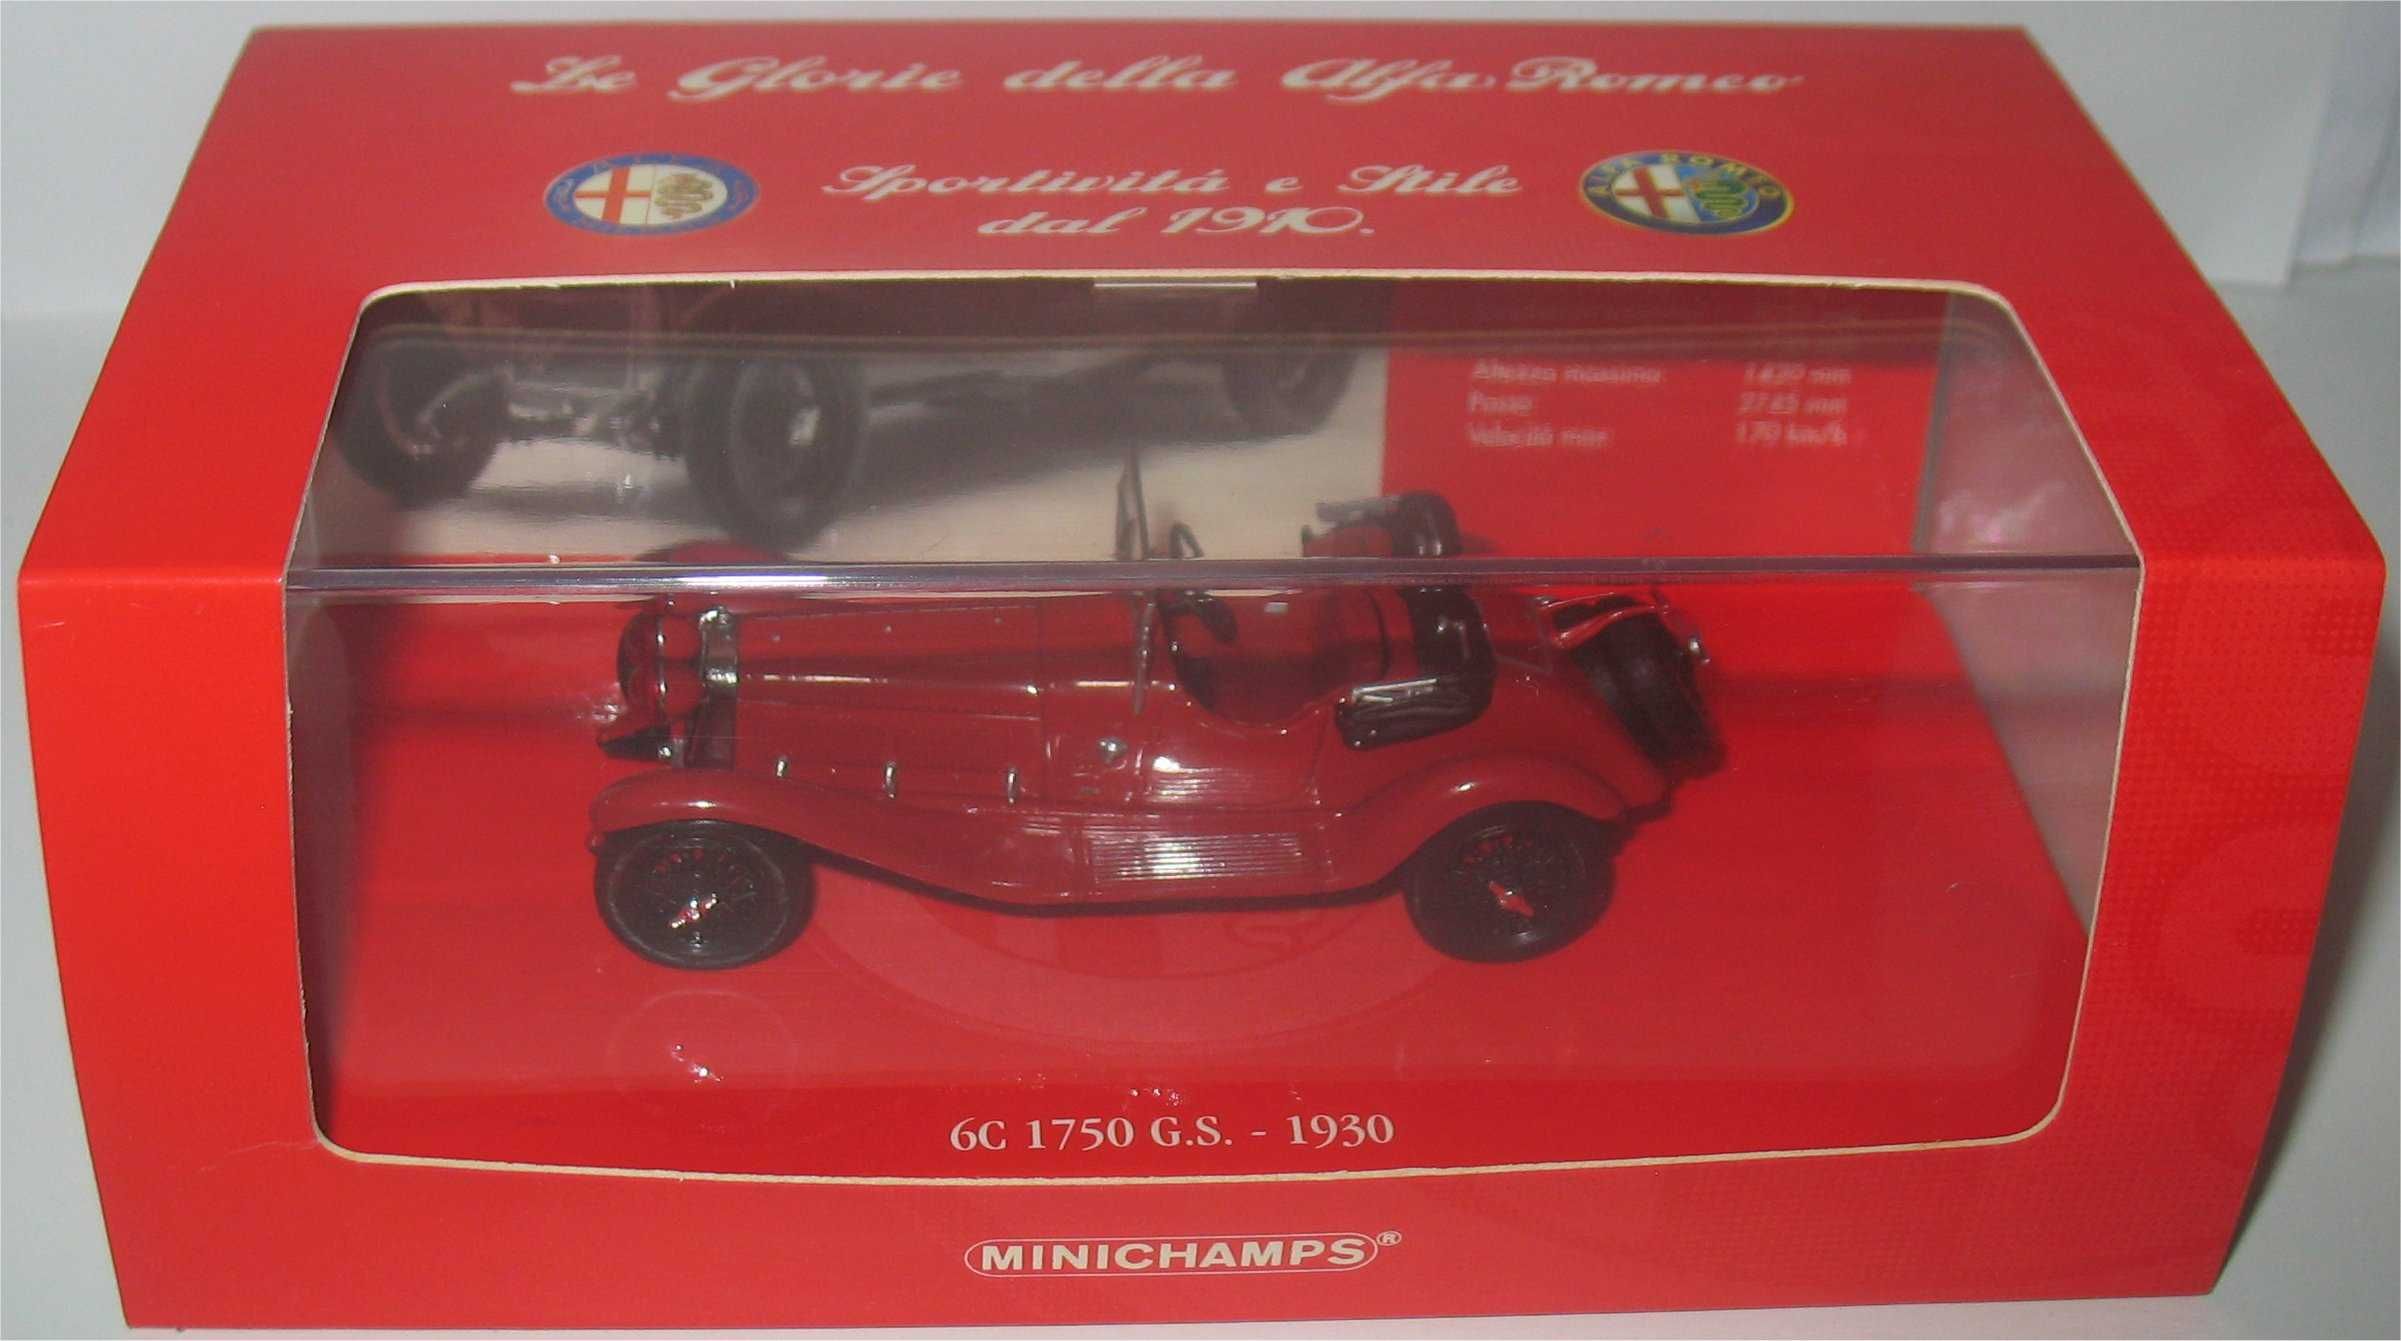 Minichamps - Alfa Romeo 6C 1750 G.S. - 1930